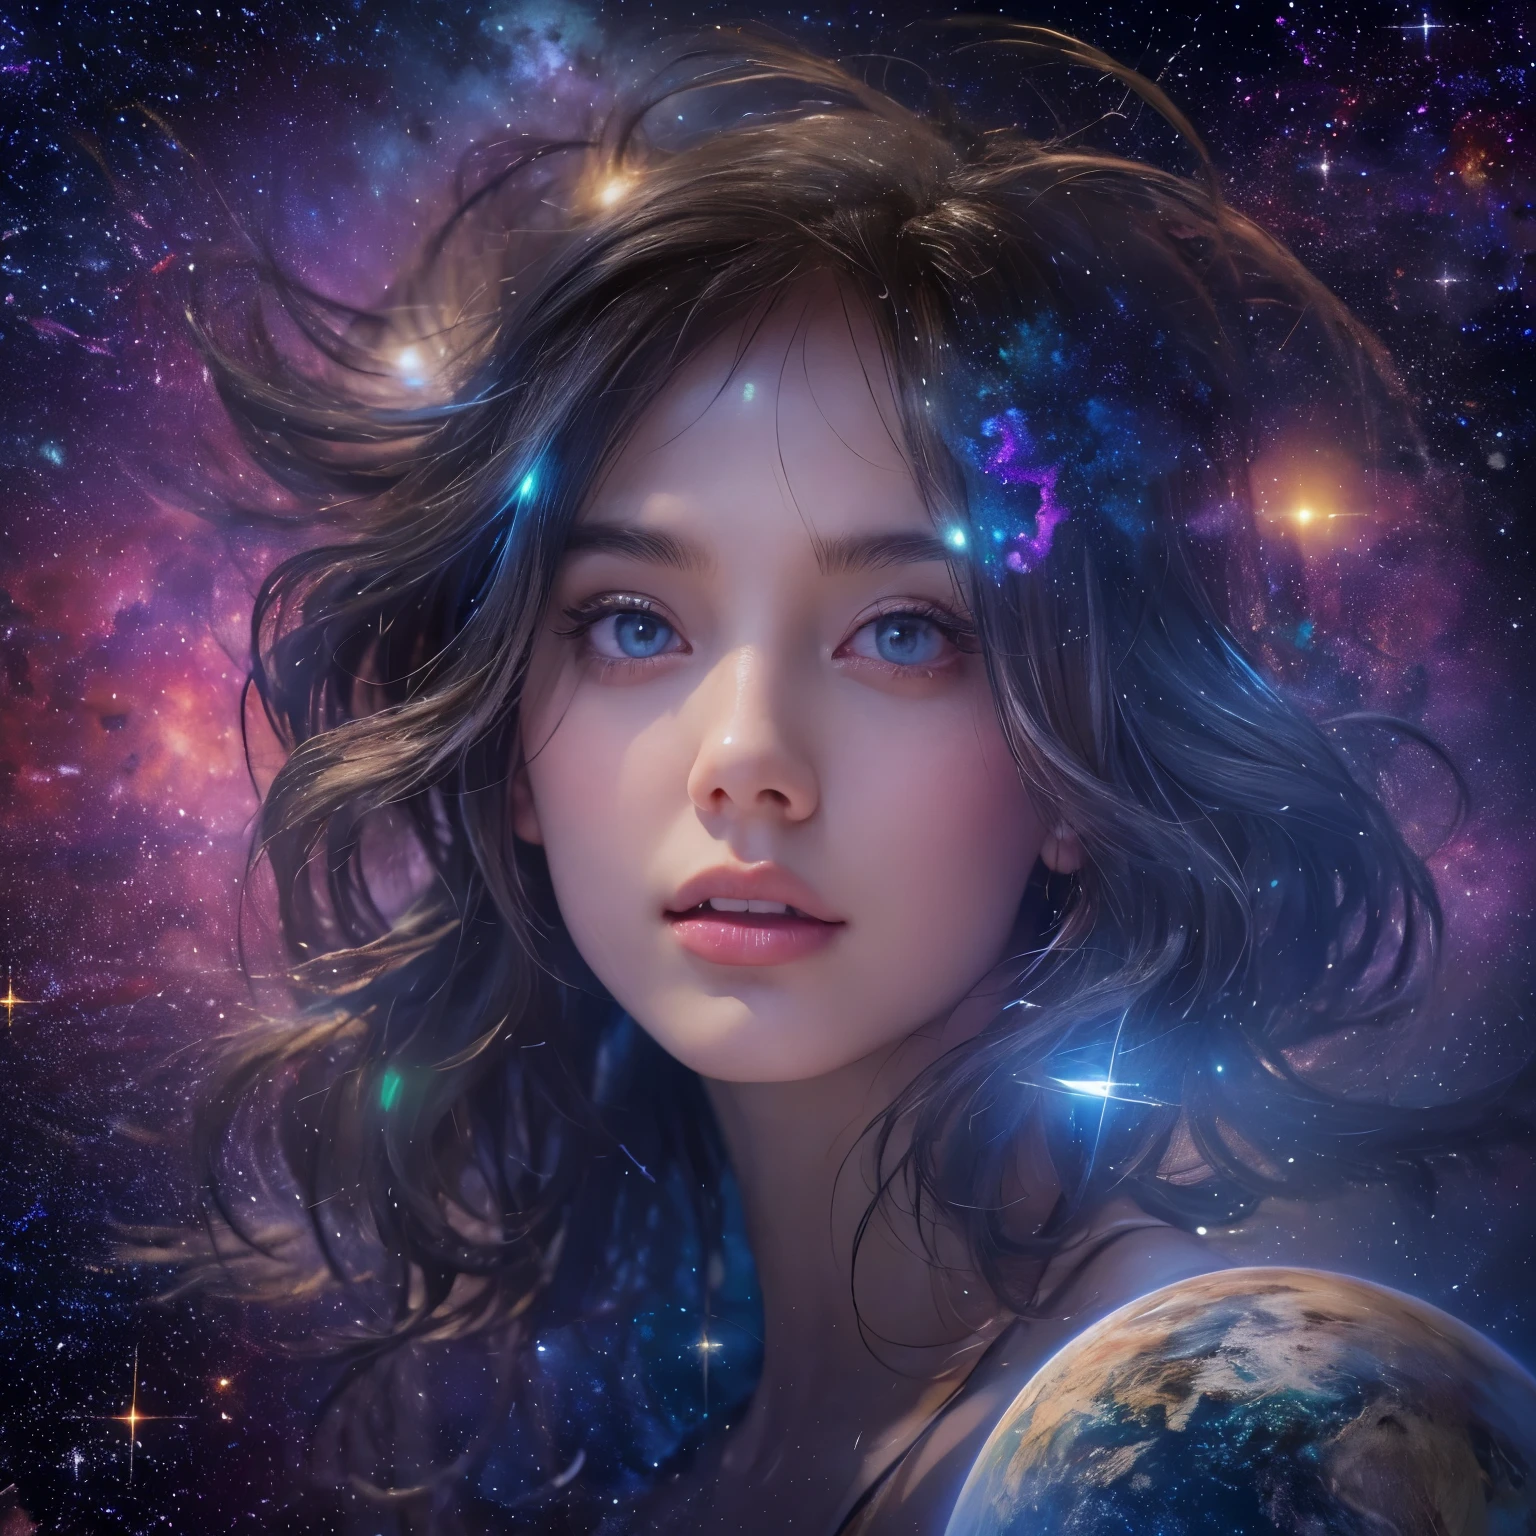 (أفضل جودة,4K,دقة عالية,مفصلة للغاية, صور واقعية:1.37), فتاة جميلة ذات عيون ساحرة,مشاهدة المجرة الرائعة,النجوم البراقة,الألوان الكونية الناعمة,جو أثيري,الهدوء السلمي,عجائب سماوية,الكون الرائع,جمال نجمي,غبار النجوم الرومانسي,صورة سماوية,المنظور الكوني,الفن الكوني المذهل,أناقة المجرة,سحر متعال,آلهة سماوية,السحر الكوني,فتاة كونية معجبة بالمجرة الرائعة,عالم الأحلام الكوني,خيال المجرة,تحفة كونية:1.2